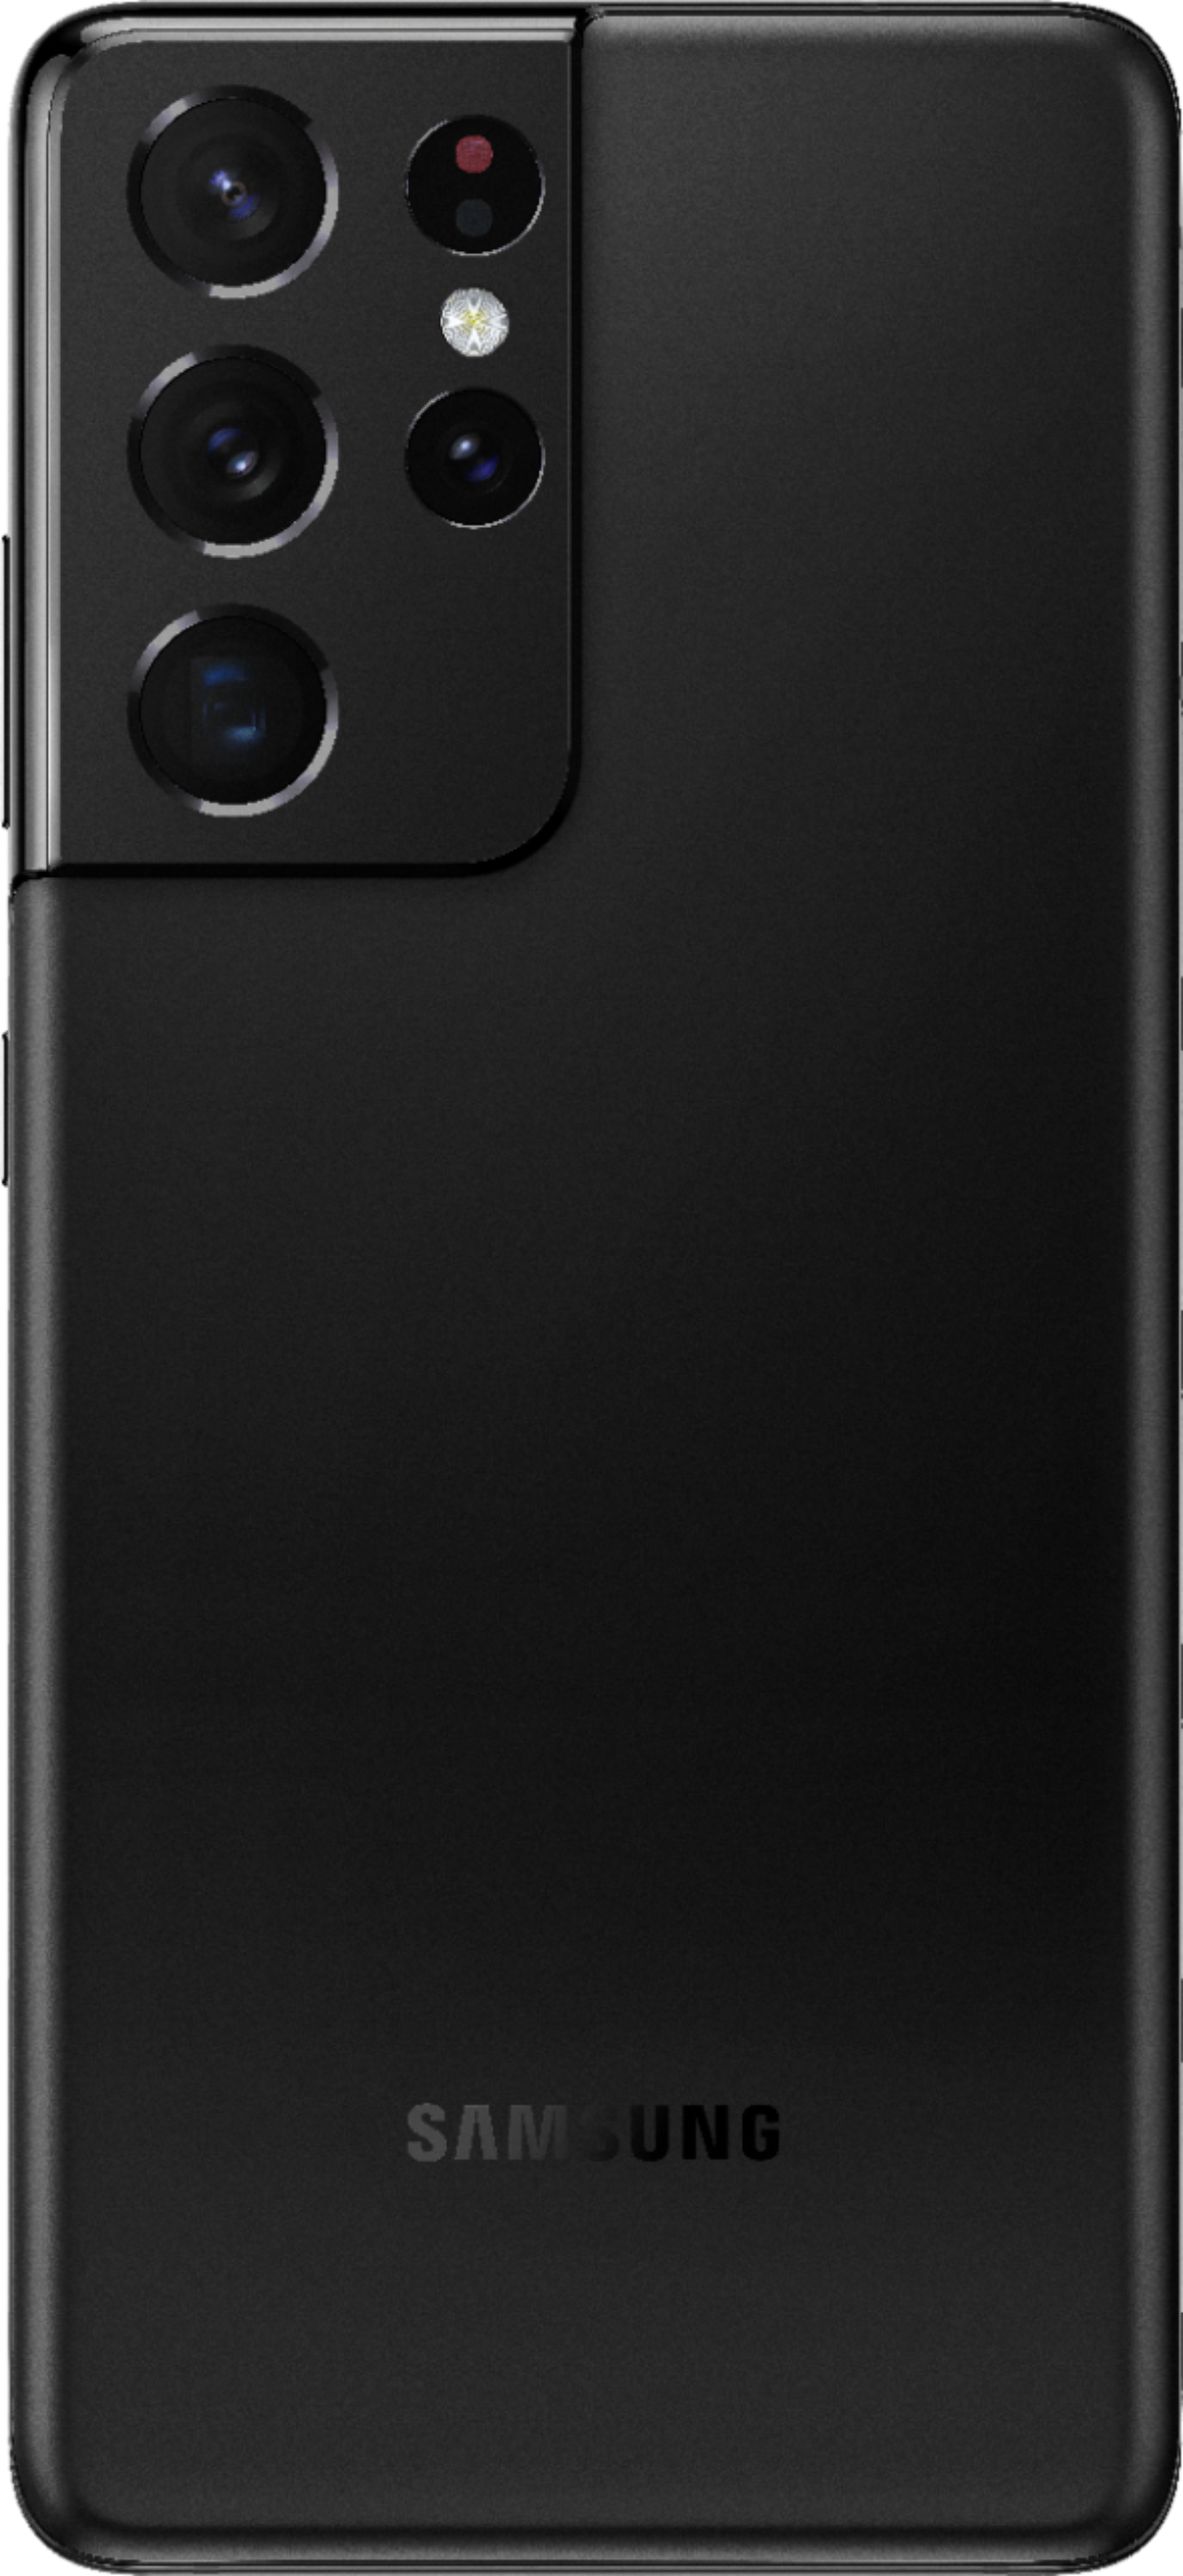 スマートフォン/携帯電話 スマートフォン本体 Best Buy: Samsung Galaxy S21 Ultra 5G 256GB (Unlocked) Phantom 